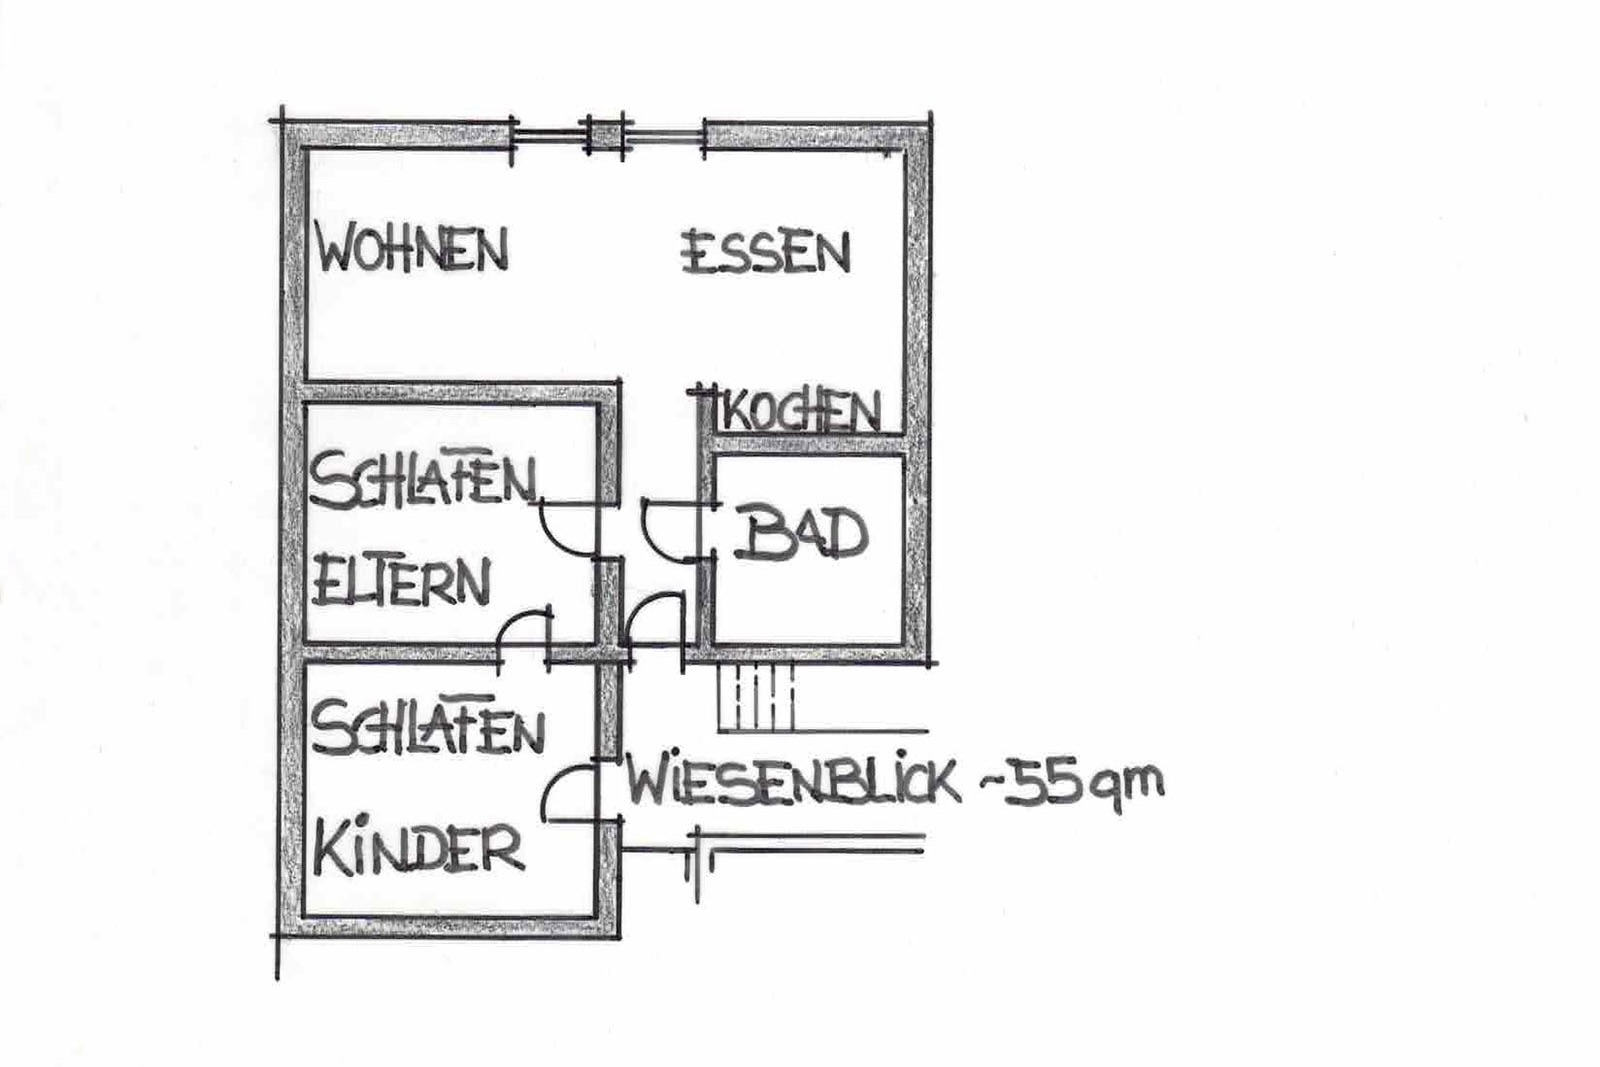 Grundriss Ferienwohnung Wiesenblick, ca. 35qm Grundfläche, 2 Schlafzimmer, Bad und offener Wohnküche mit angrenzender Sofaecke